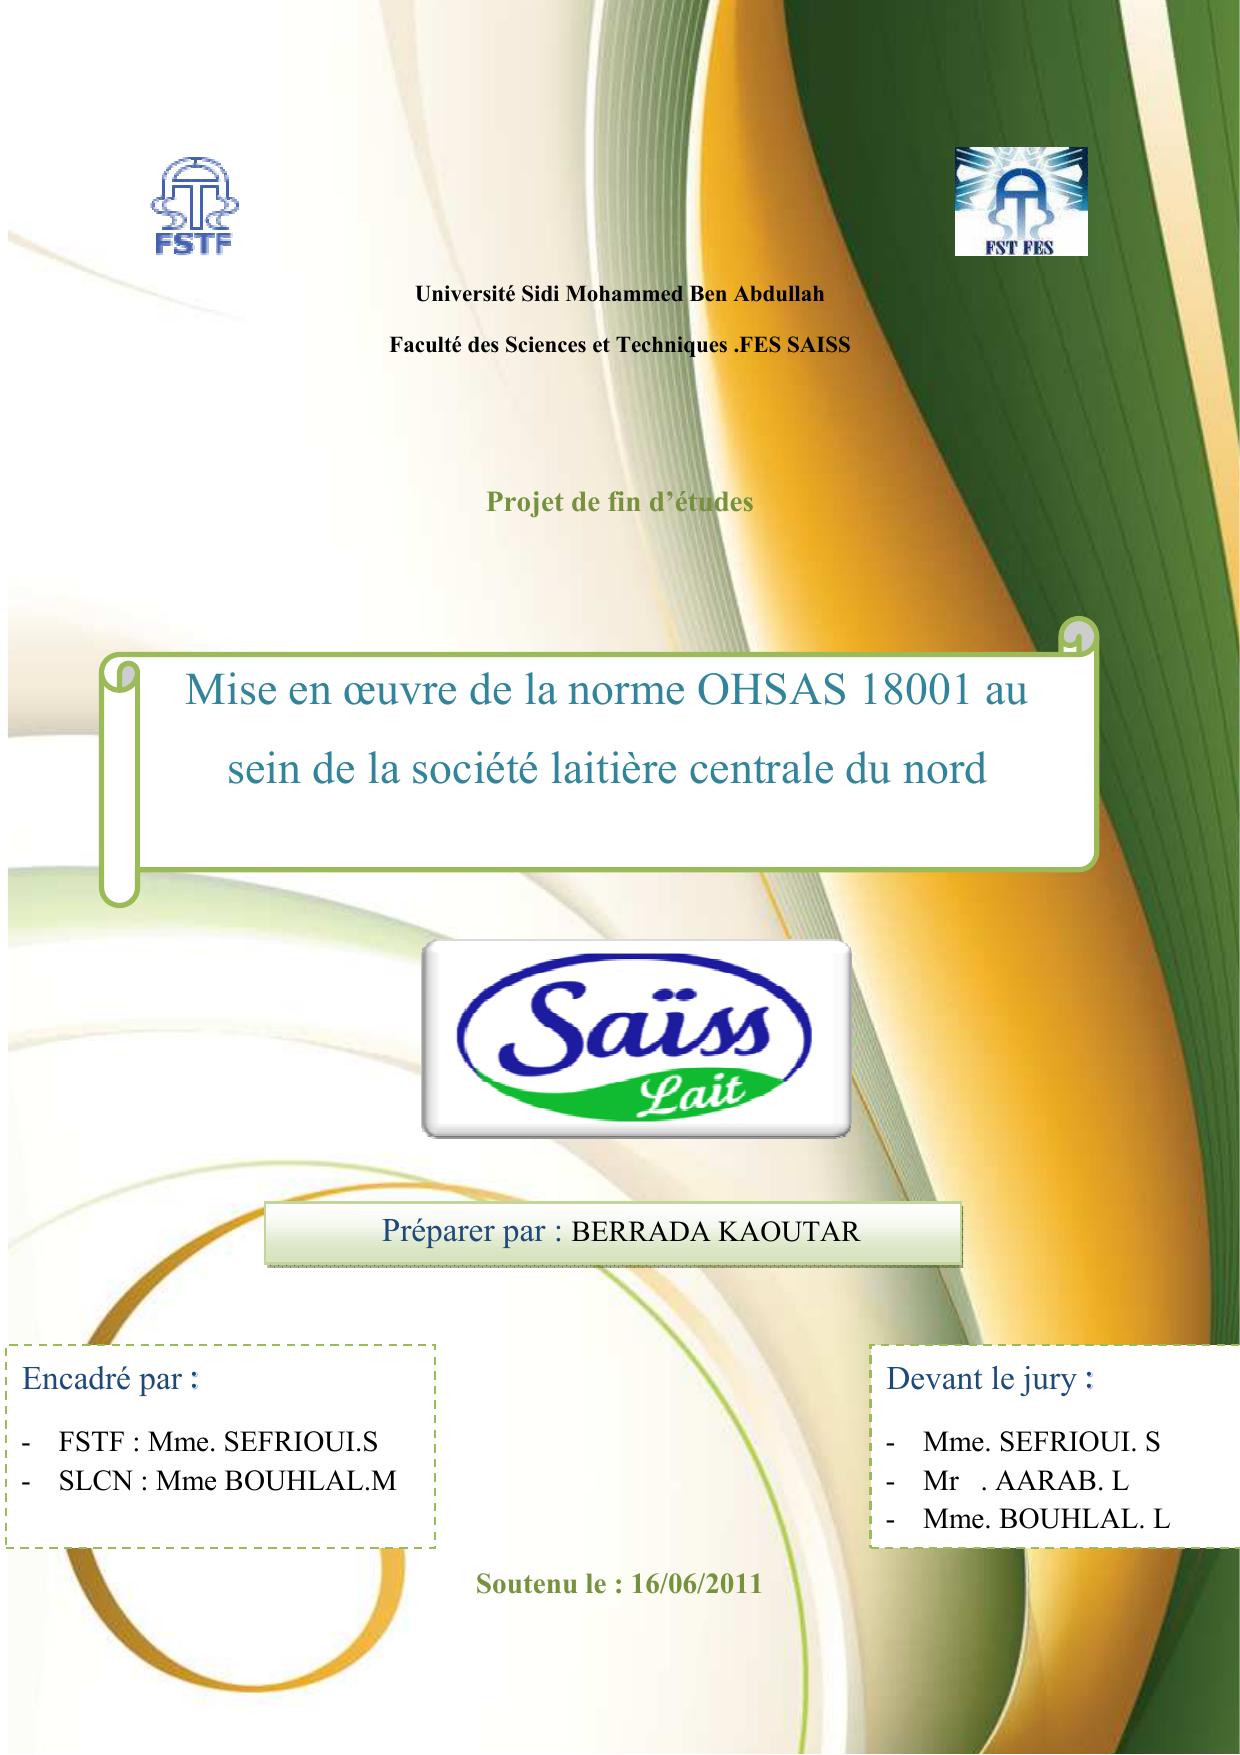 Mise en oeuvre de la norme OHSAS 18001 au sein de la société laitière centrale du nord